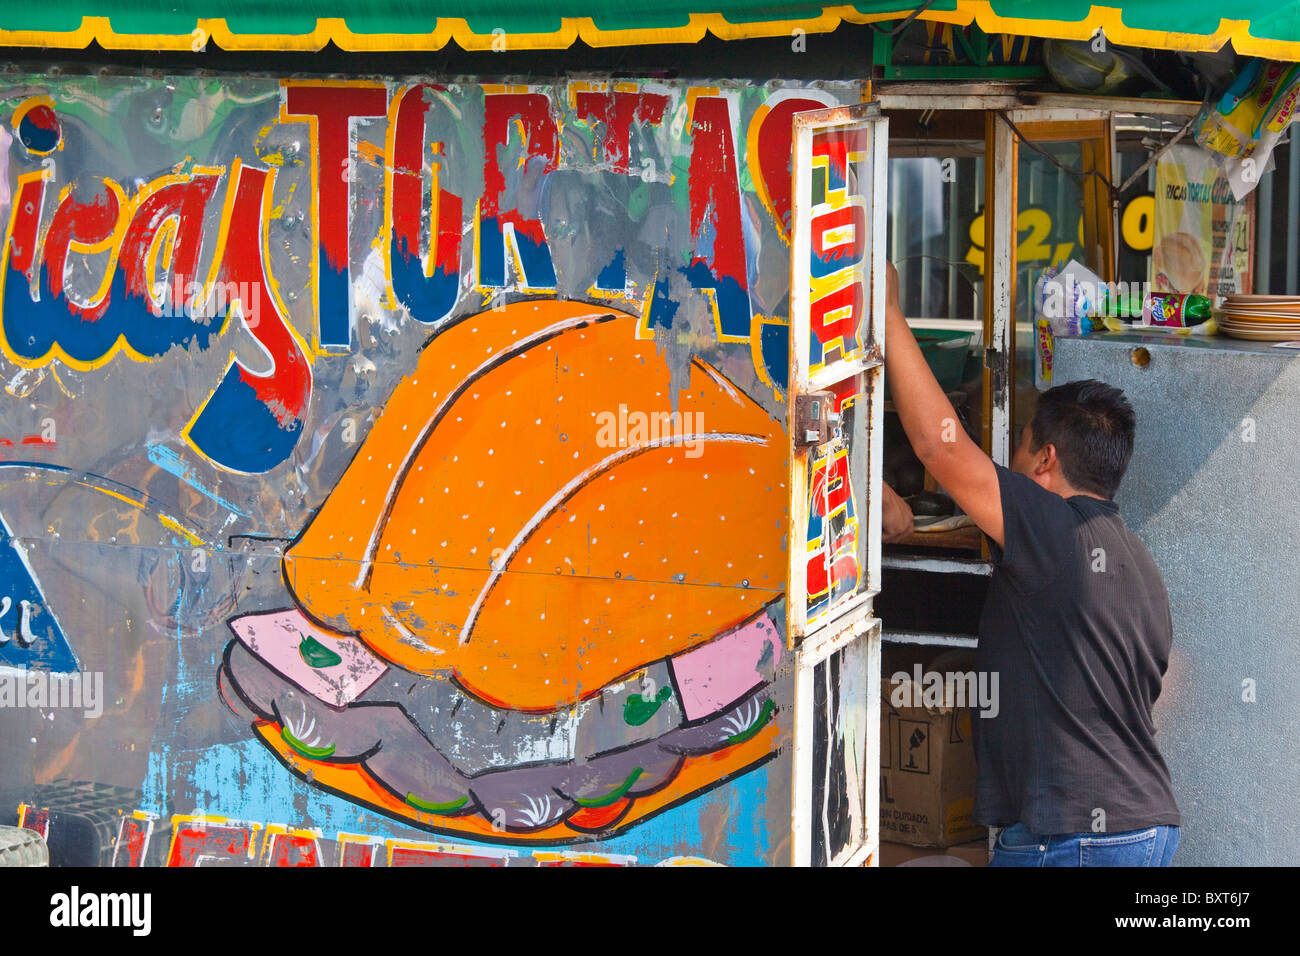 Tortas cart, Coyoacan, Mexico City, Mexico Stock Photo